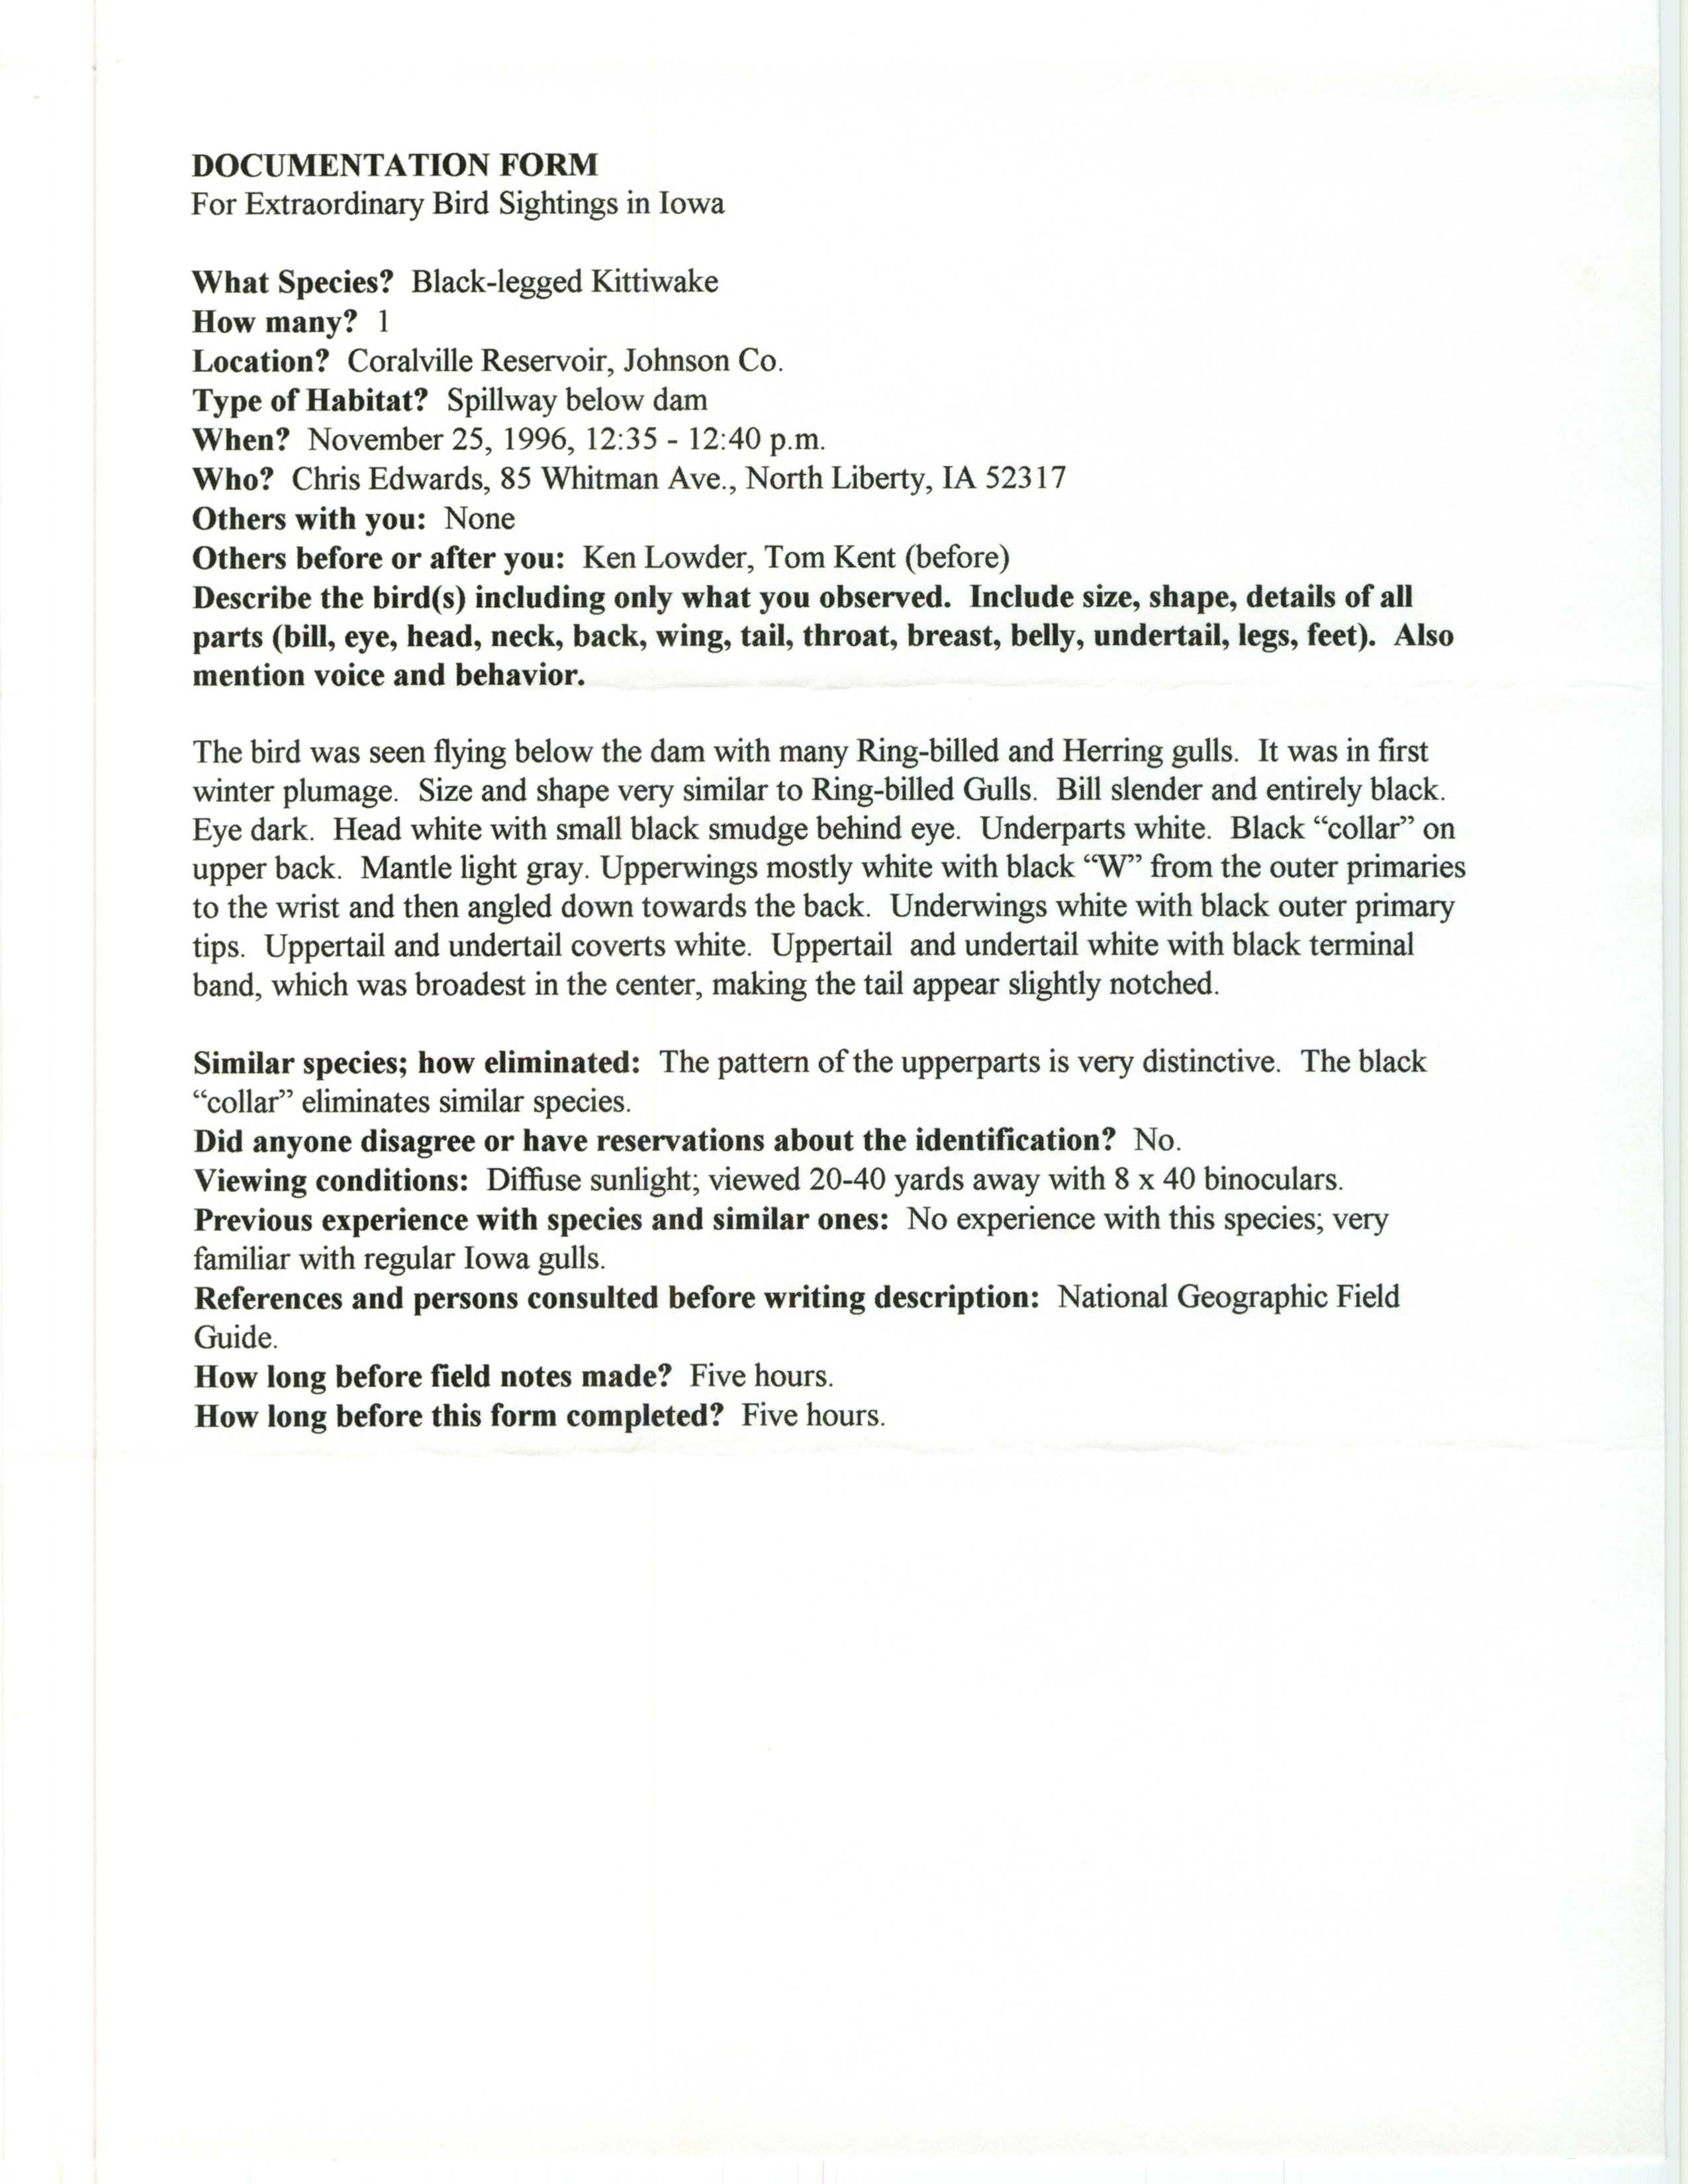 Rare bird documentation form for Black-legged Kittiwake at Coralville Reservoir, 1996